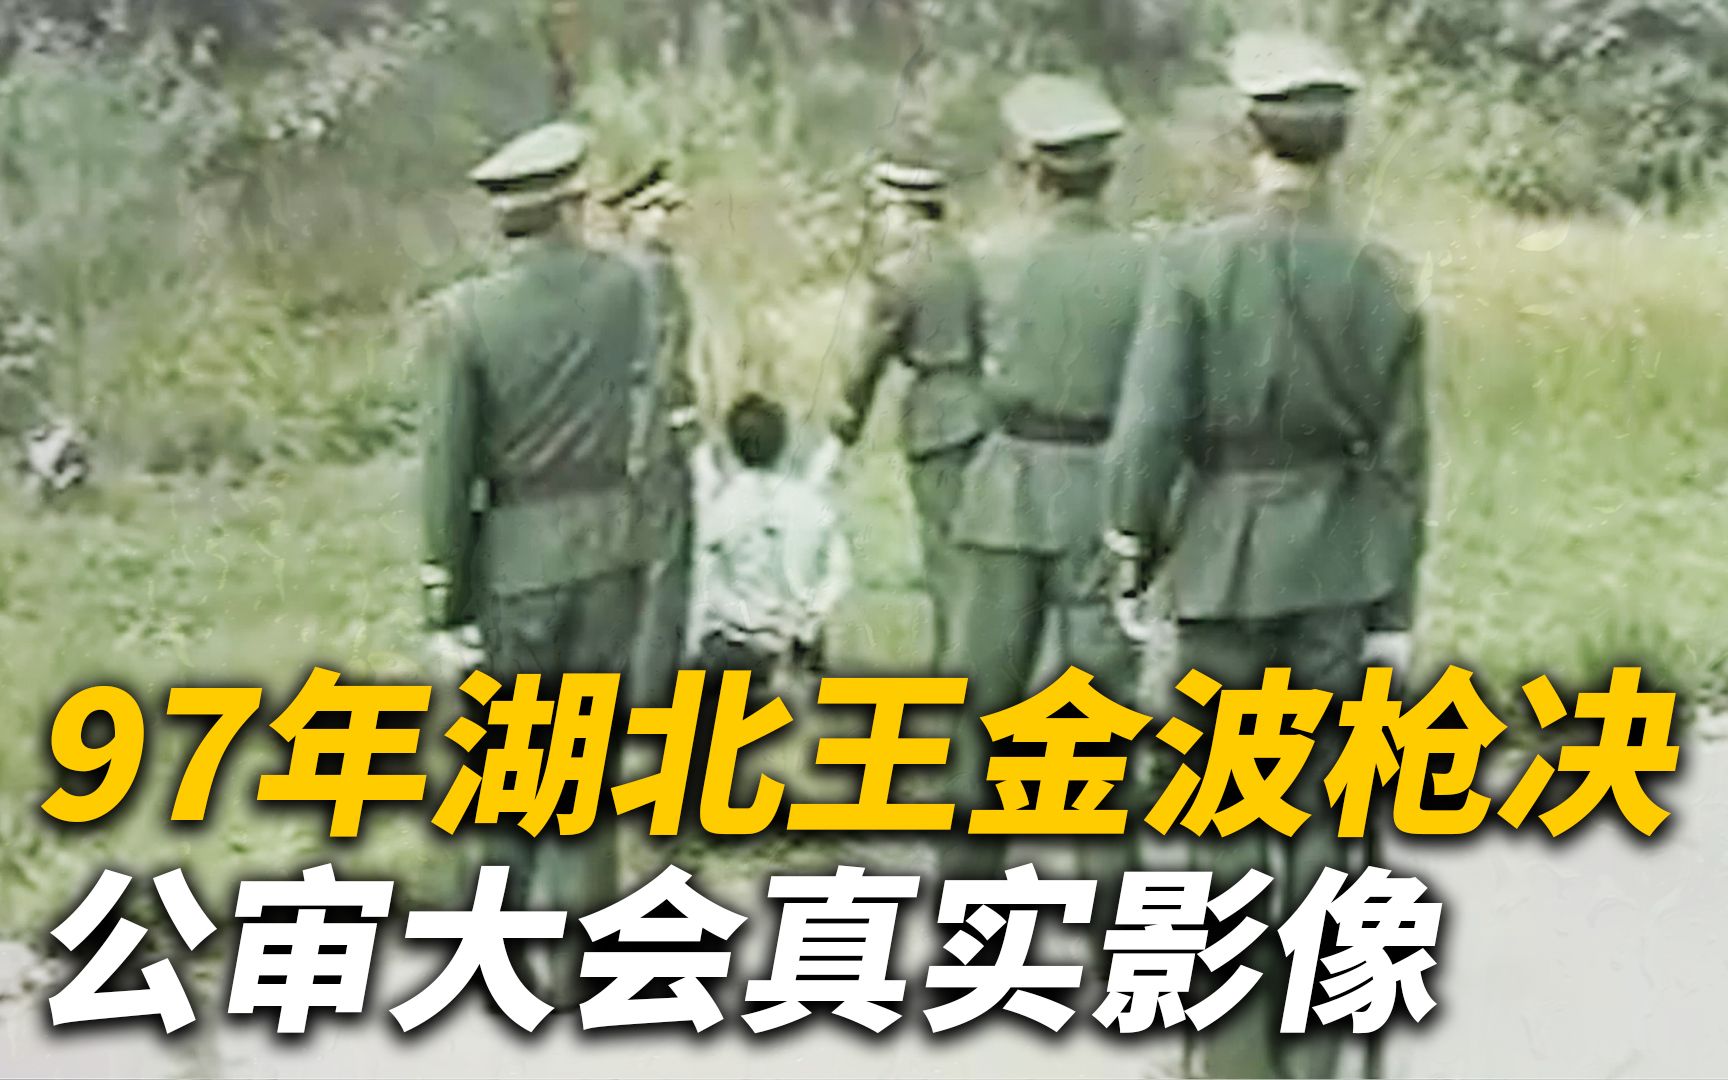 “军中蛀虫”王金波抢劫杀人被判死刑，1997年执行枪决的真实影像